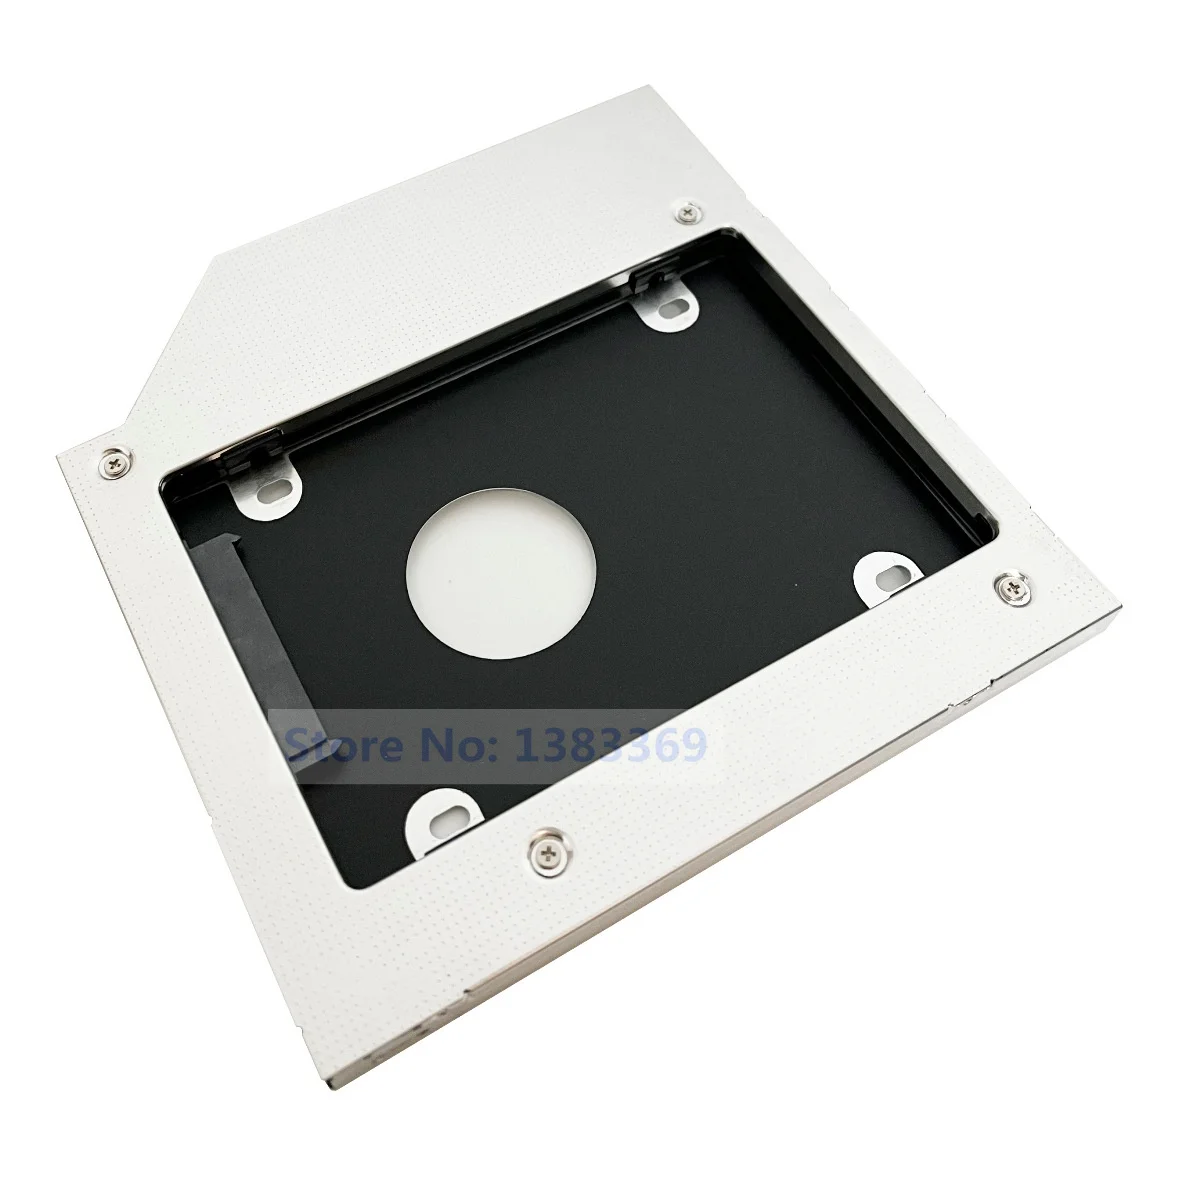 NIGUDEYANG 2nd жесткий диск SSD HDD оптический адаптер Caddy для Acer Aspire ES1-522 ES1-523 ES1-524 ES1-531 ES1-533